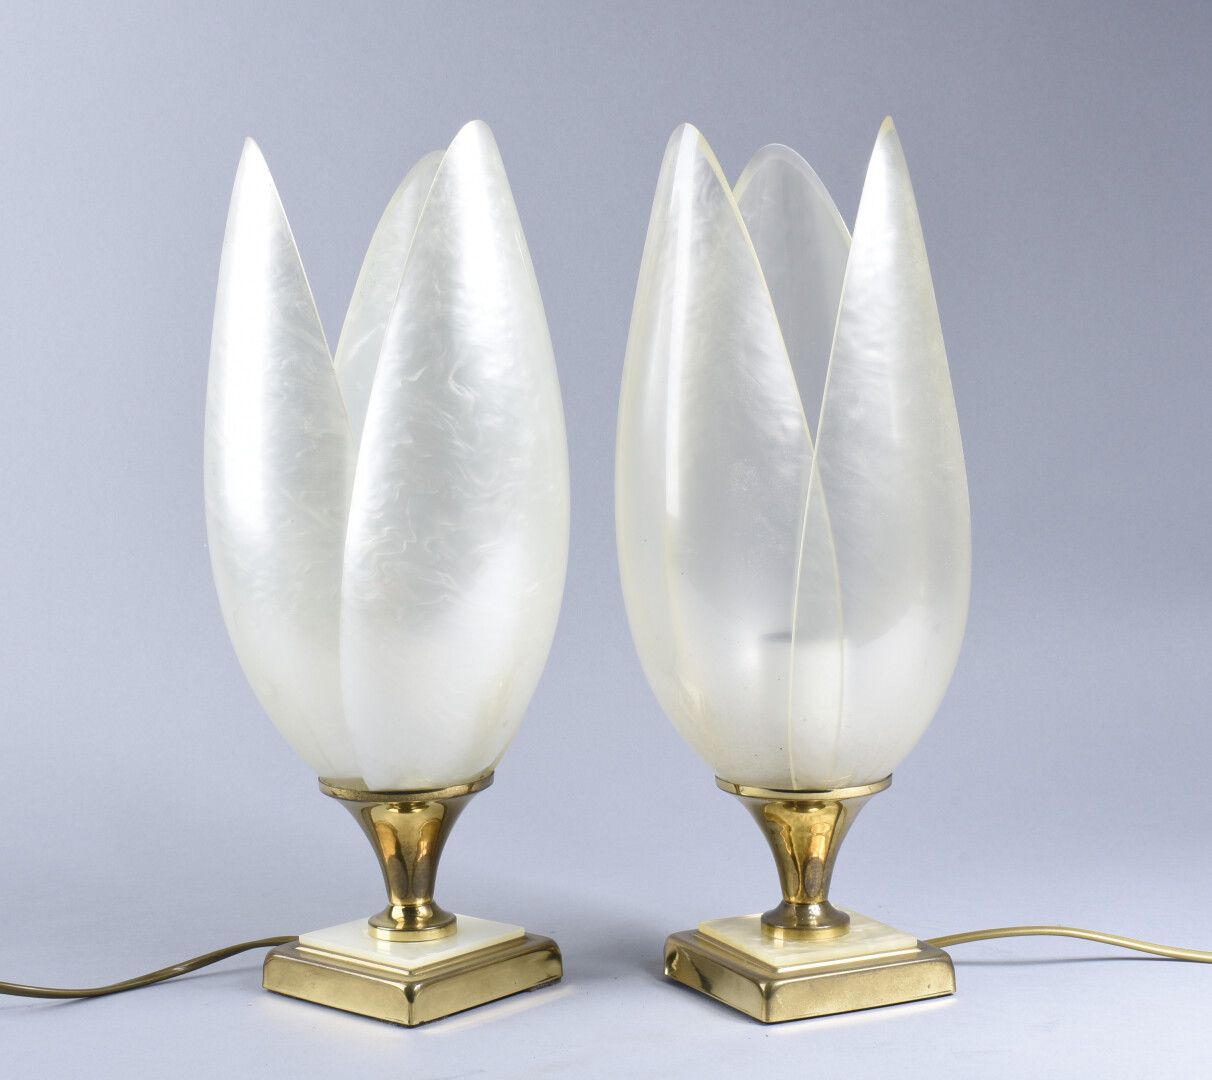 Null ROUGIER Laurent (siglos XX-XXI)

Pareja de lámparas de mesa modelo "Tulipán&hellip;